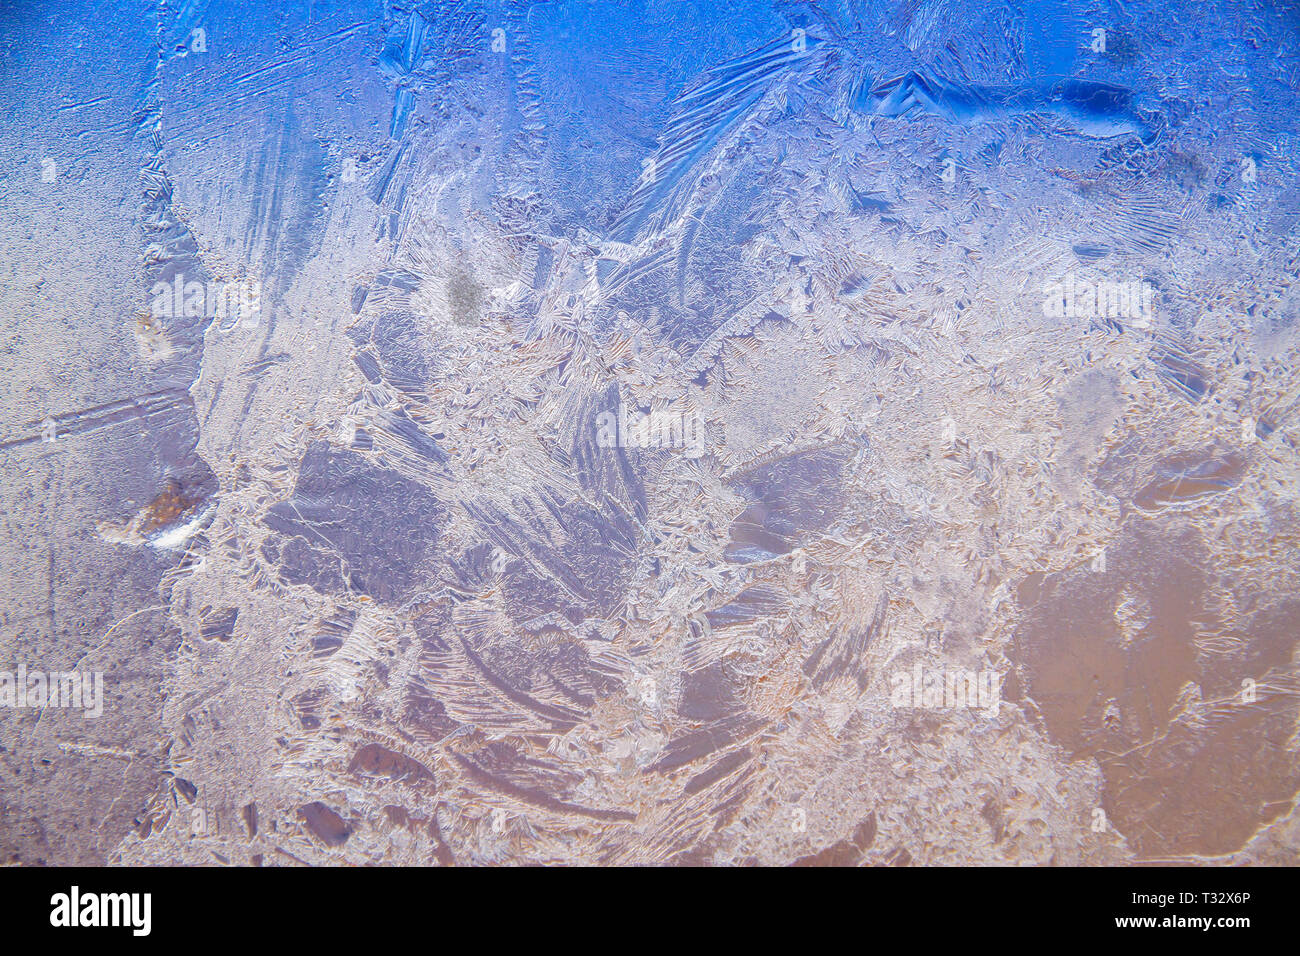 Ein eisiger frost Hintergrundbild. In diesem Bild sehen Sie die einzigartigen Muster erstellt, wenn Frost Formen auf Glas. Stockfoto